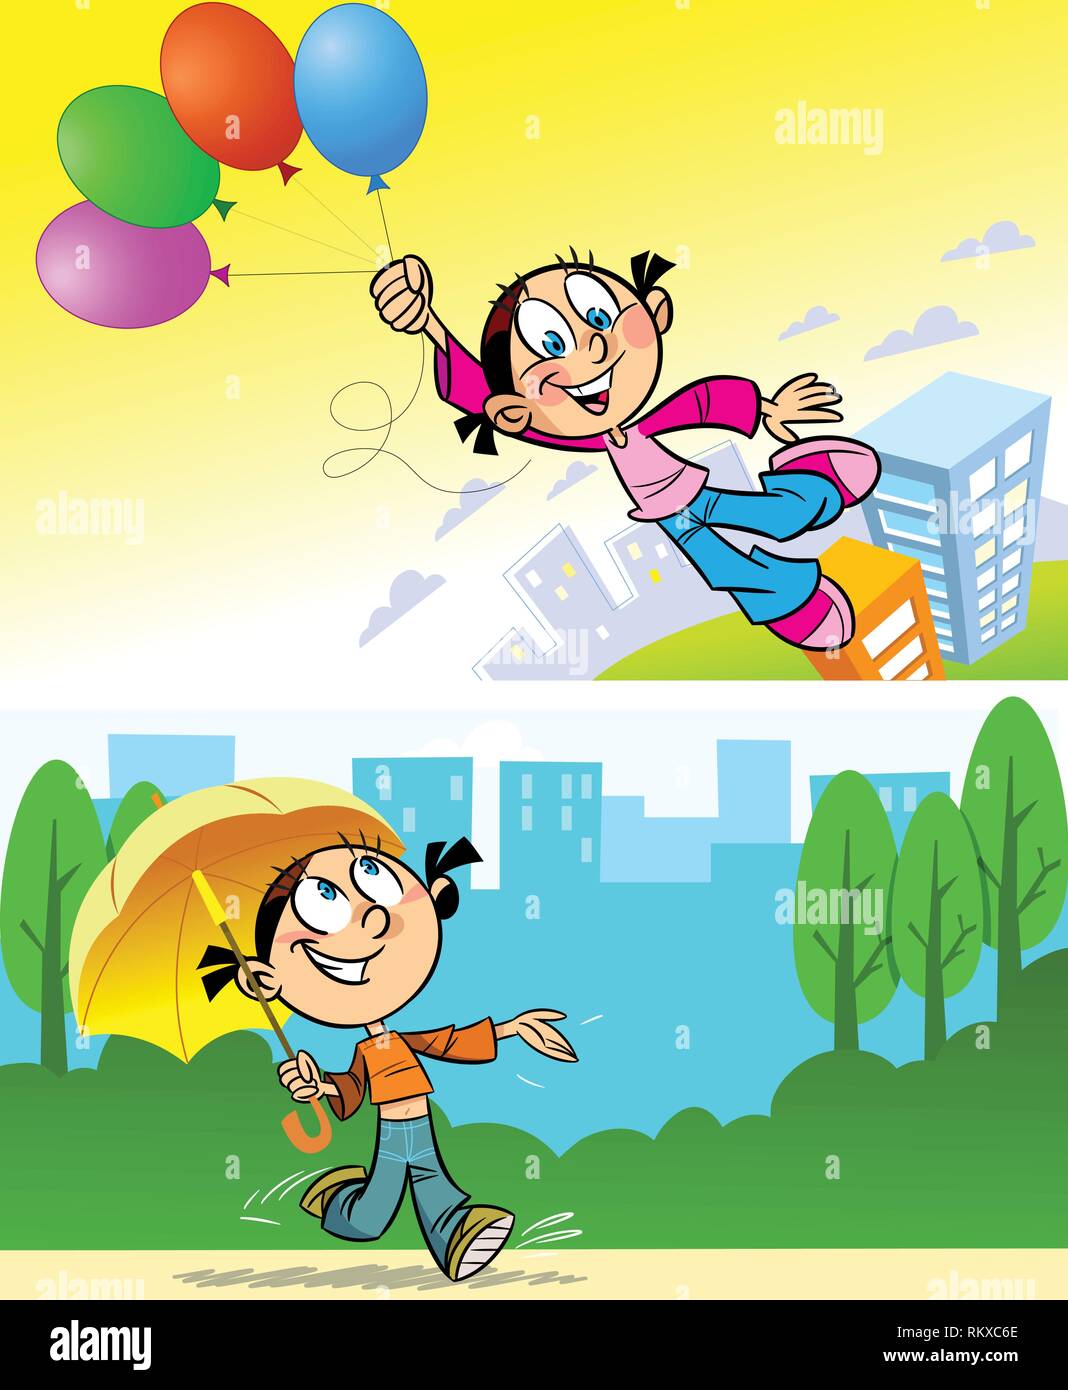 Das Mädchen geht in die Stadt mit einem Regenschirm. Das Mädchen ist über der Stadt flog auf Ballons. Abbildung auf der einzelnen Schichten. Stock Vektor